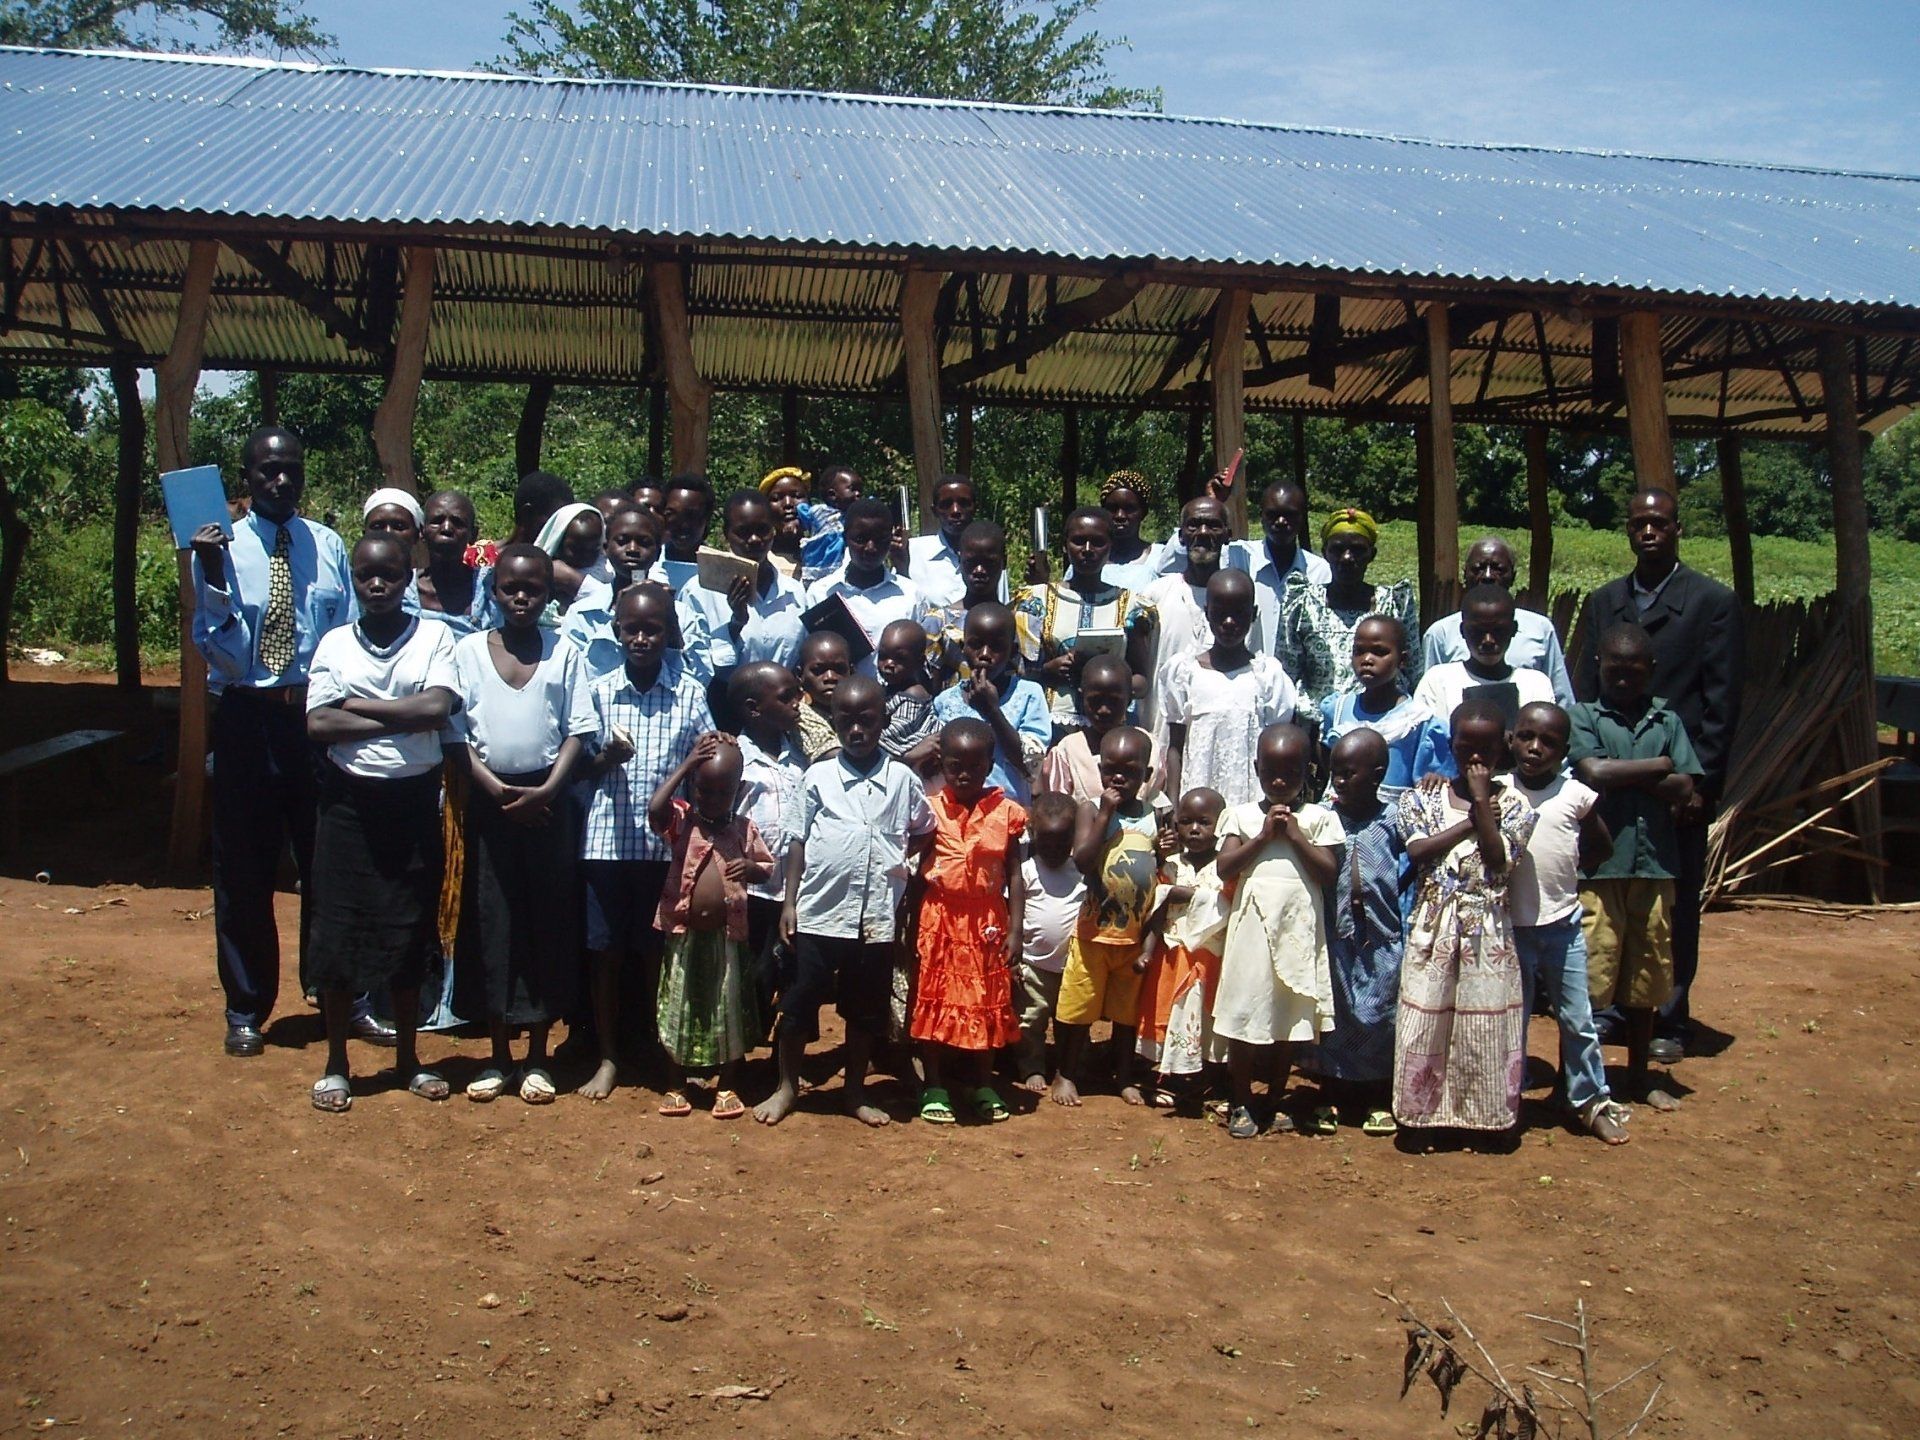 Church group in Uganda